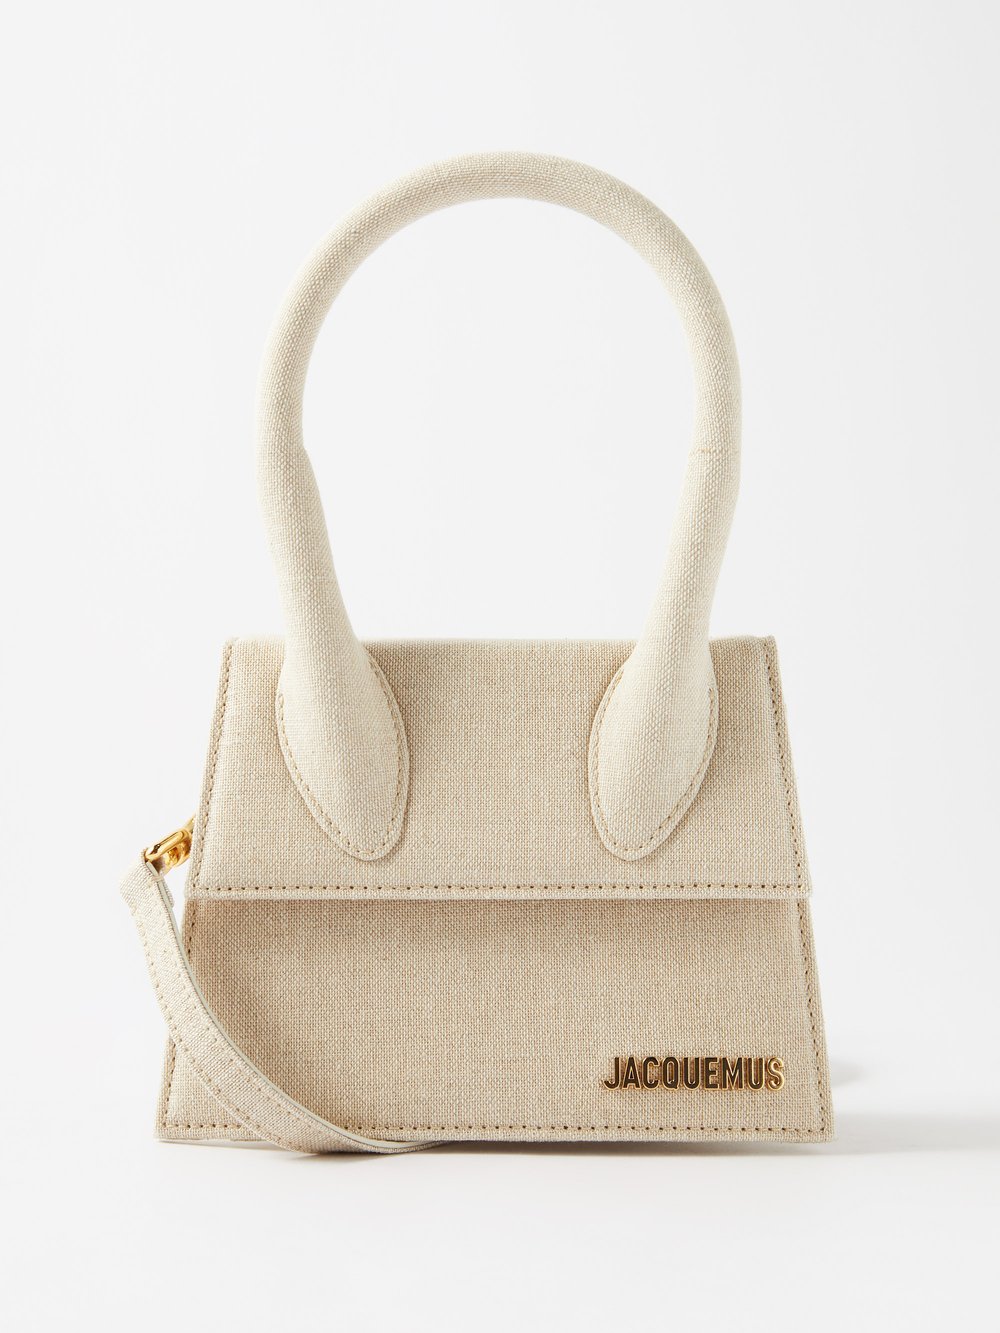 Льняная сумка chiquito среднего размера Jacquemus, бежевый jacquemus мини сумка jacquemus le chiquito черный